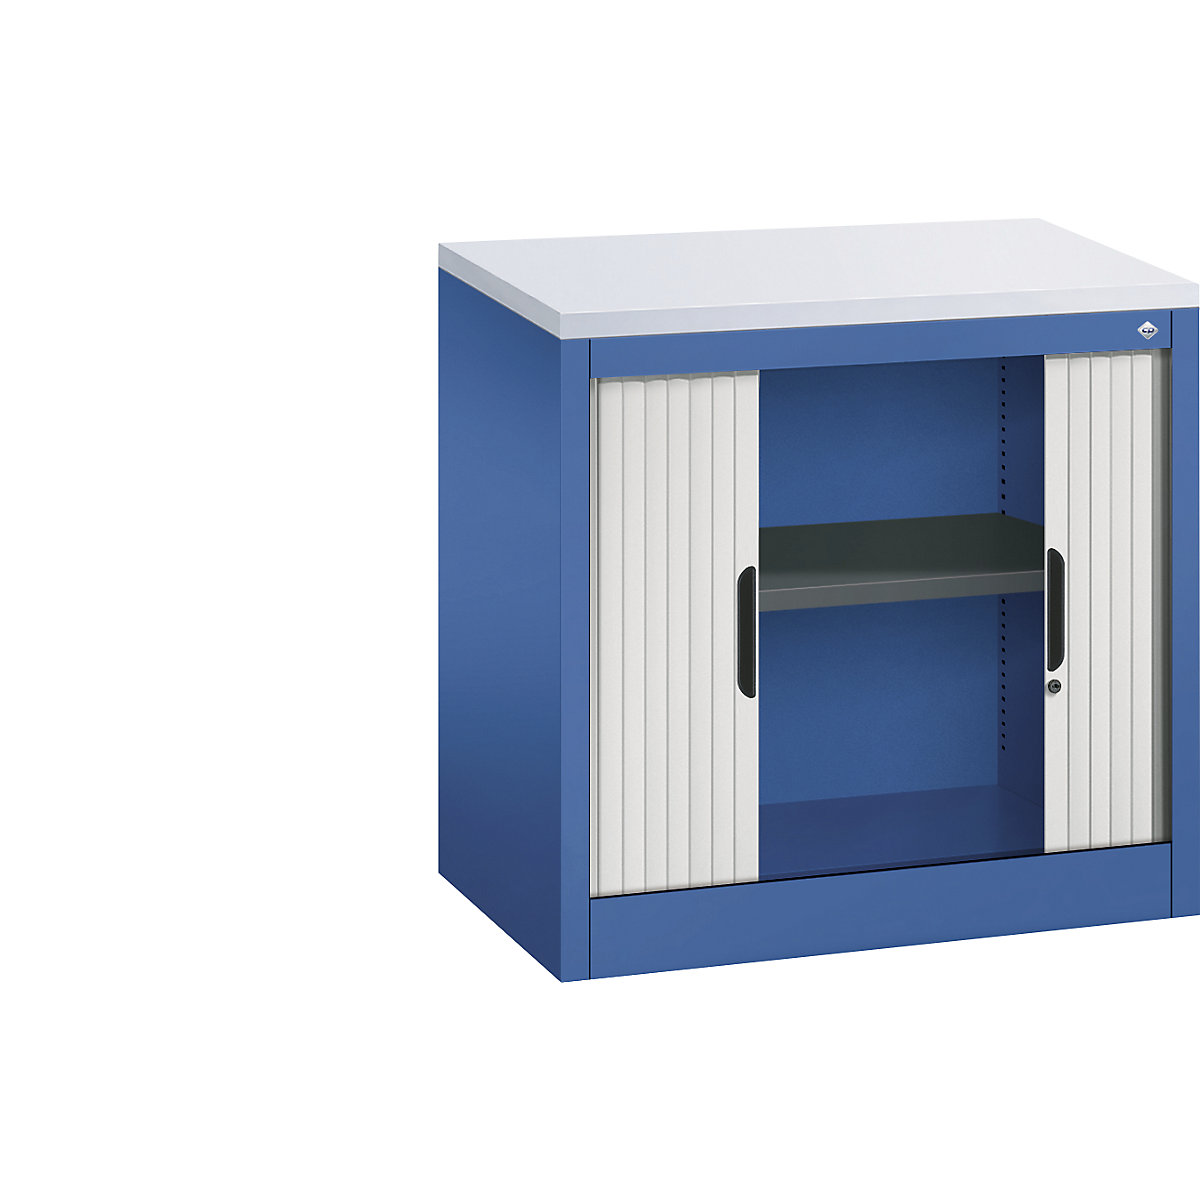 Rollladenschrank mit Horizontal-Jalousie C+P, HxBxT 720 x 800 x 420 mm, 1 Fachboden, 1,5 Ordnerhöhen, enzianblau / lichtgrau-7